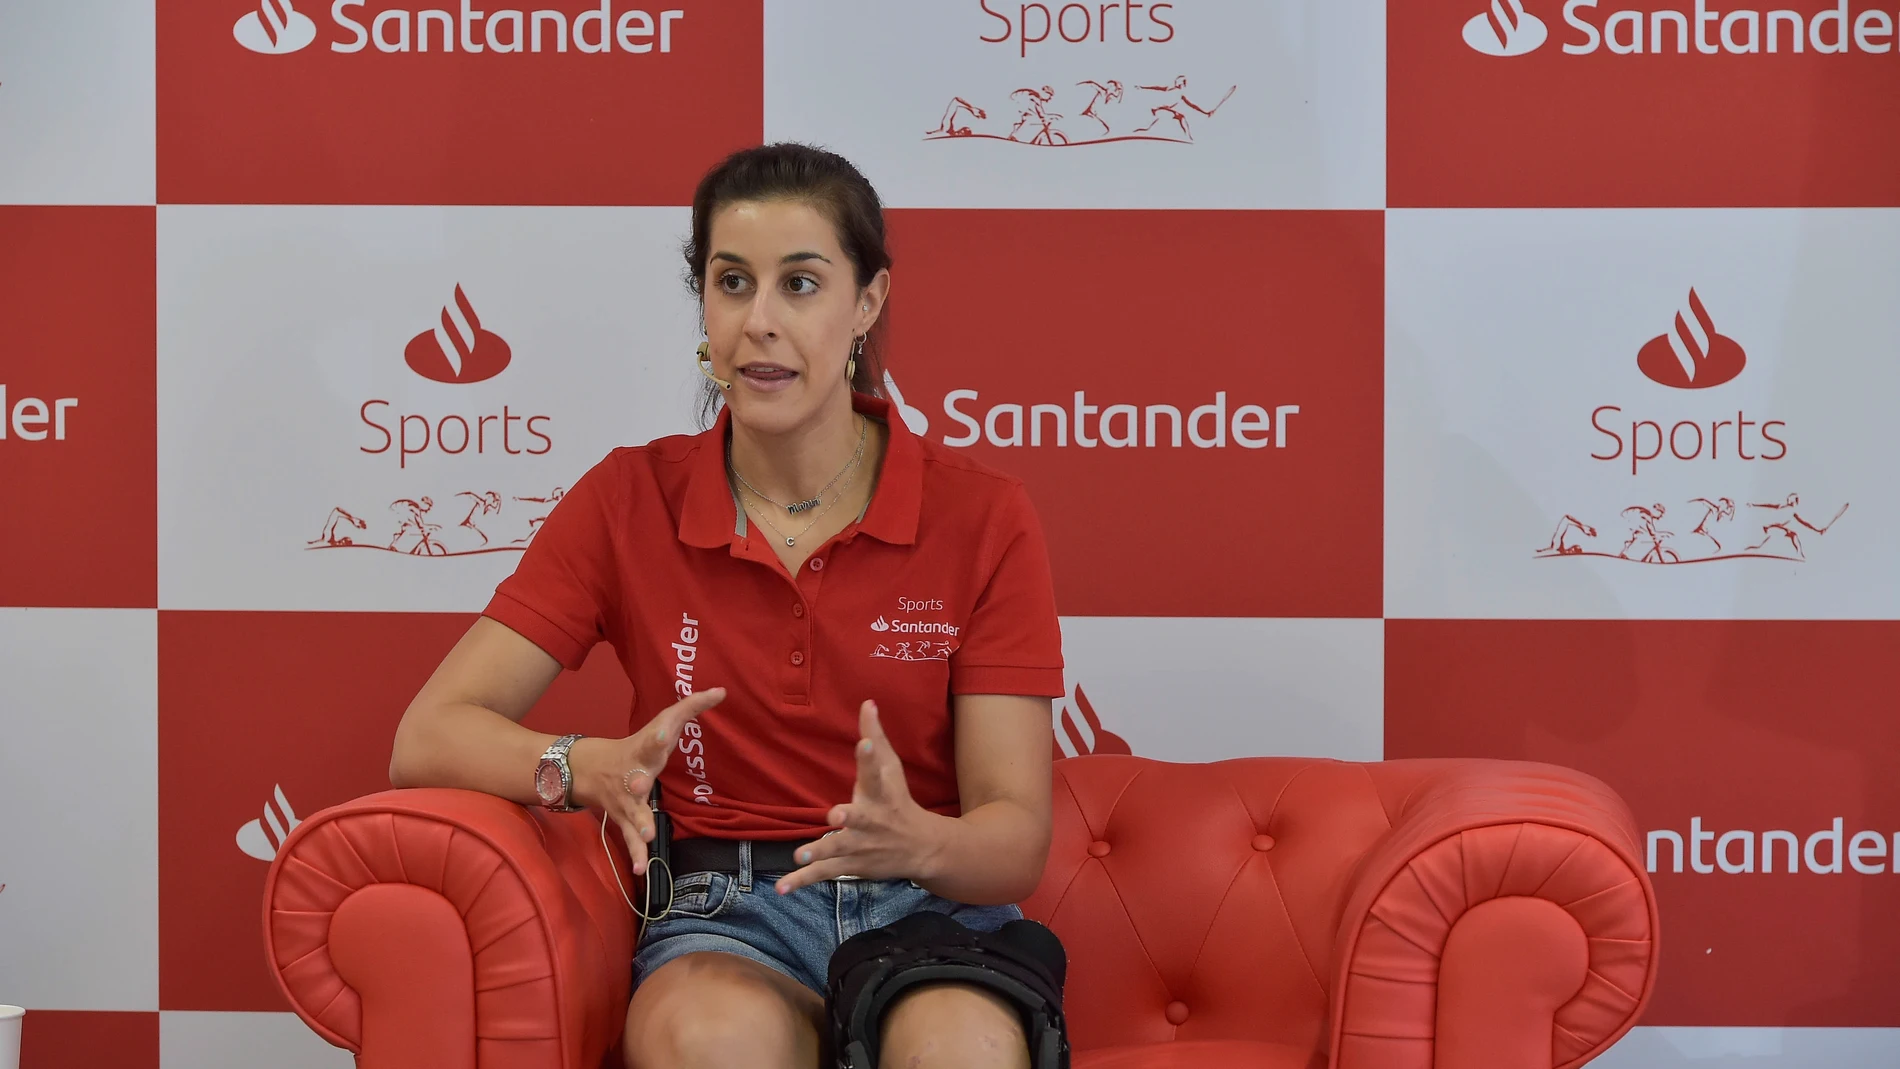 La campeona olímpica de bádminton Carolina Marín afirma que su objetivo es el oro en París 2024 tras la grave lesión de rodilla que le ha apartado de Tokio 2020